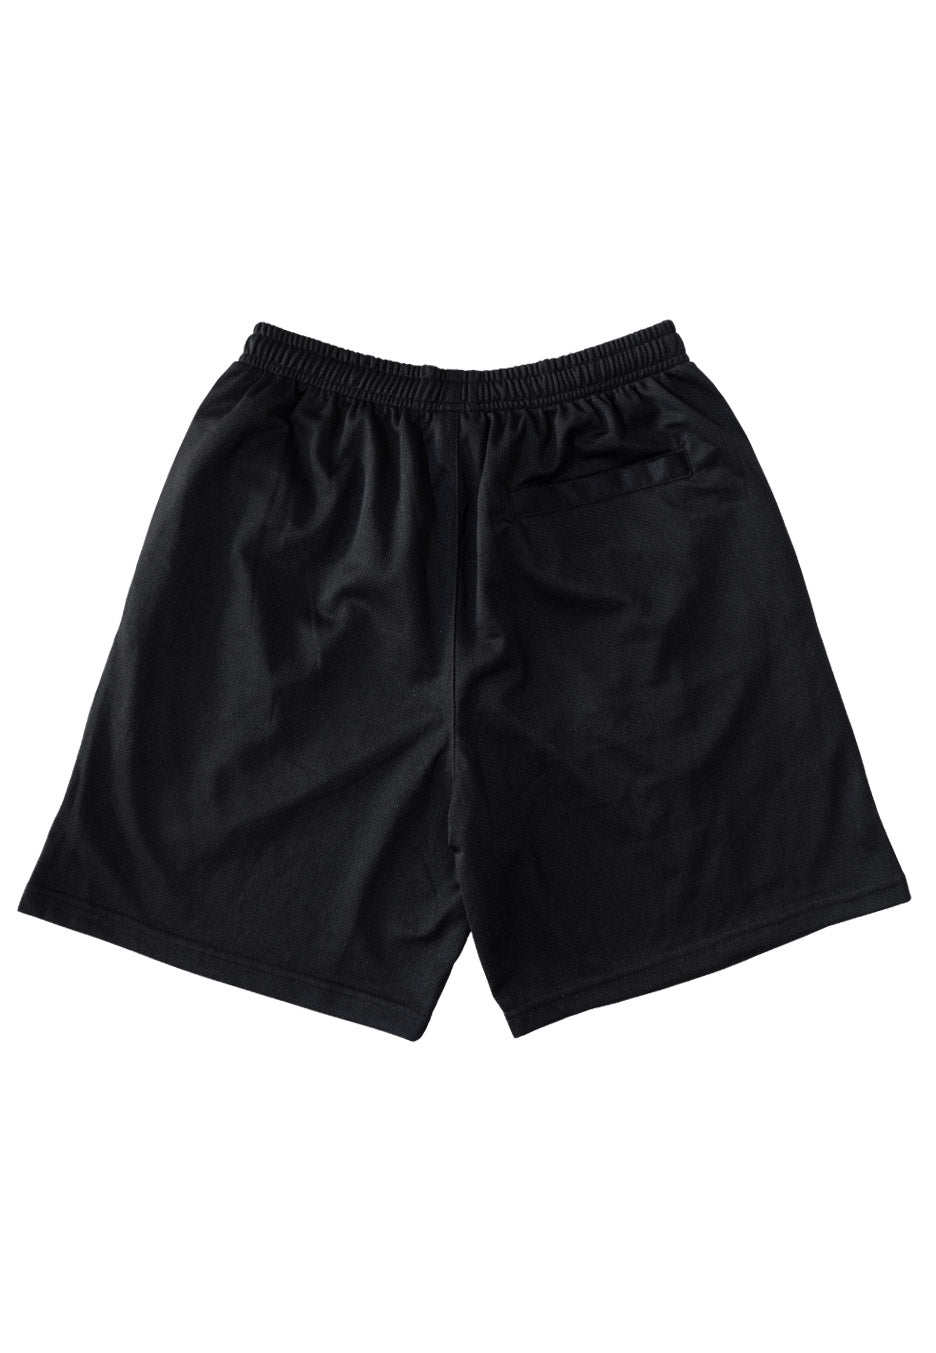 Carnifex - Ouroboros - Shorts